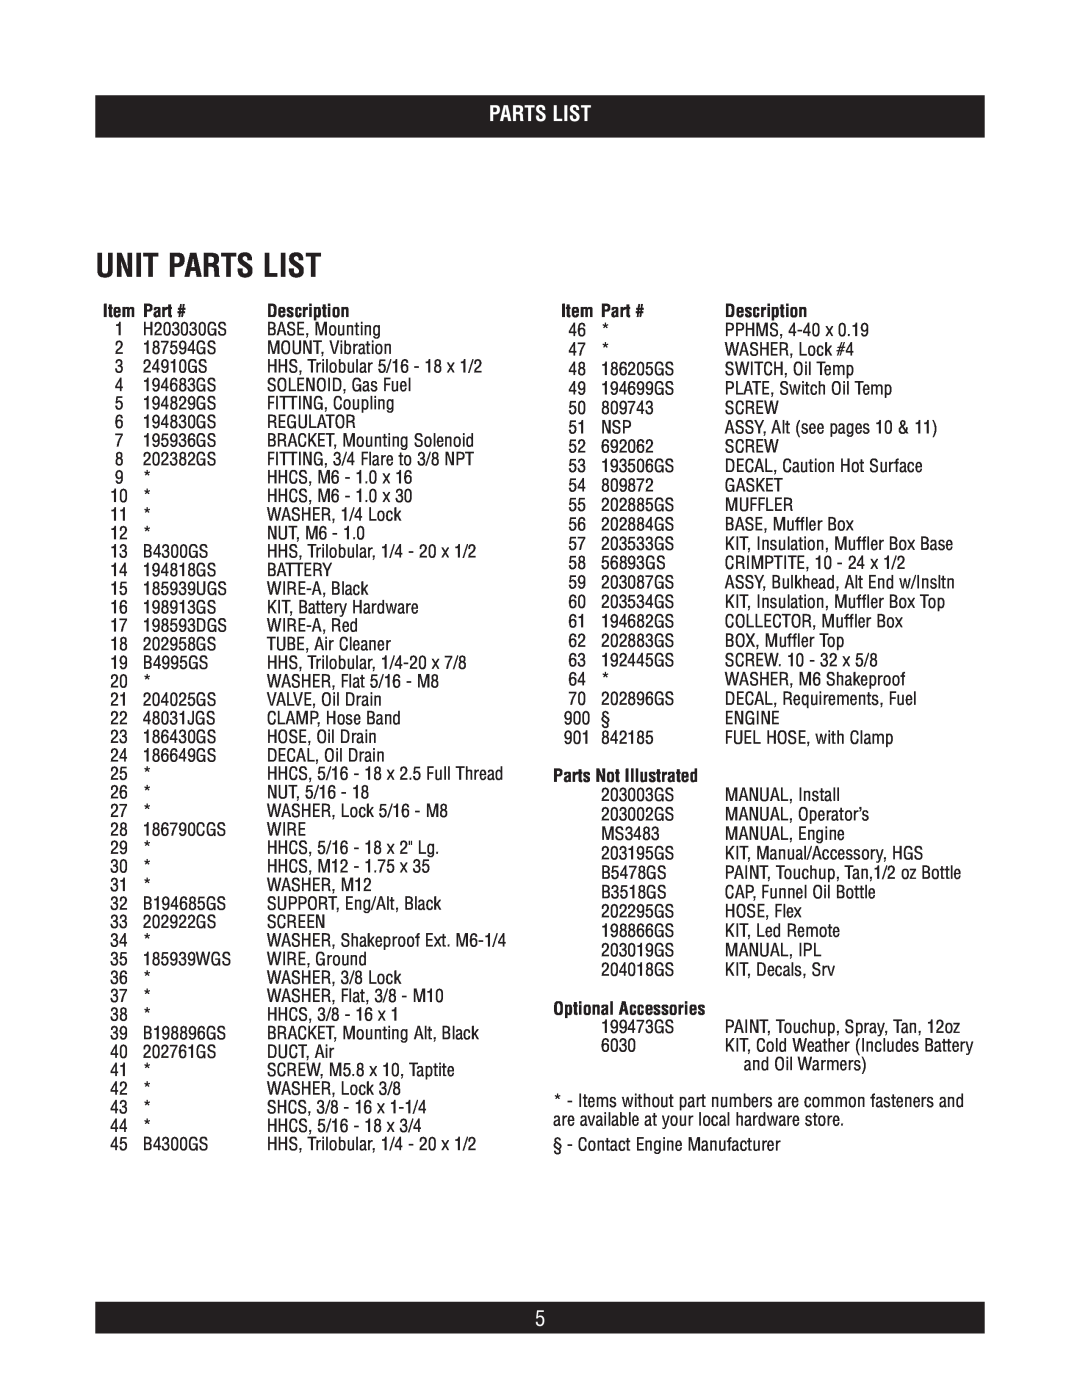 Briggs & Stratton 40266 manual Unit Parts List, Part #, Description, Parts Not Illustrated 